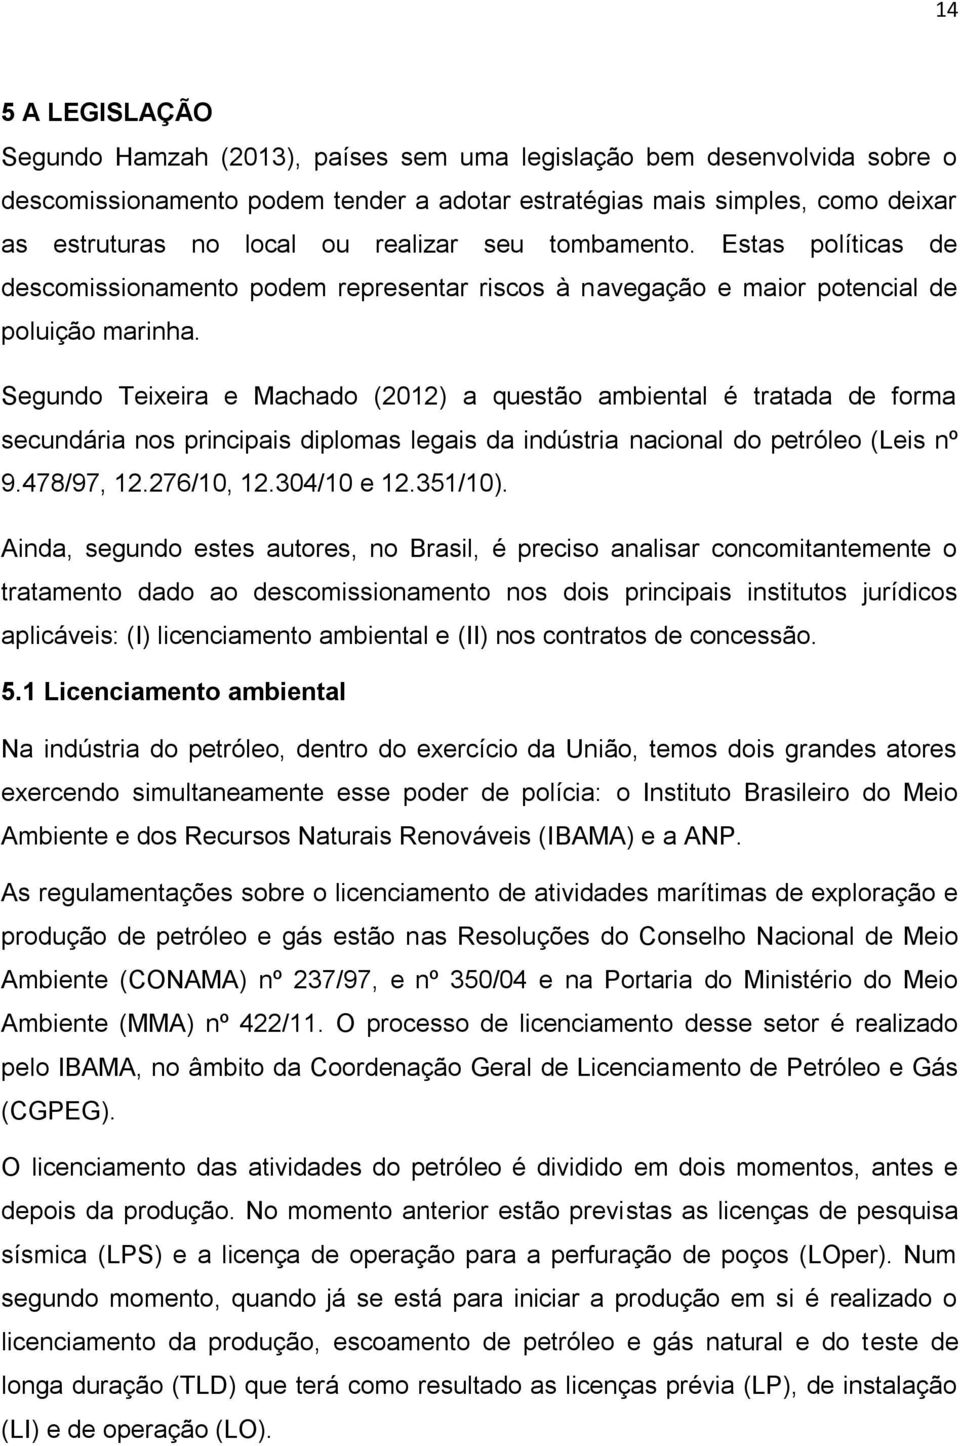 Segundo Teixeira e Machado (2012) a questão ambiental é tratada de forma secundária nos principais diplomas legais da indústria nacional do petróleo (Leis nº 9.478/97, 12.276/10, 12.304/10 e 12.